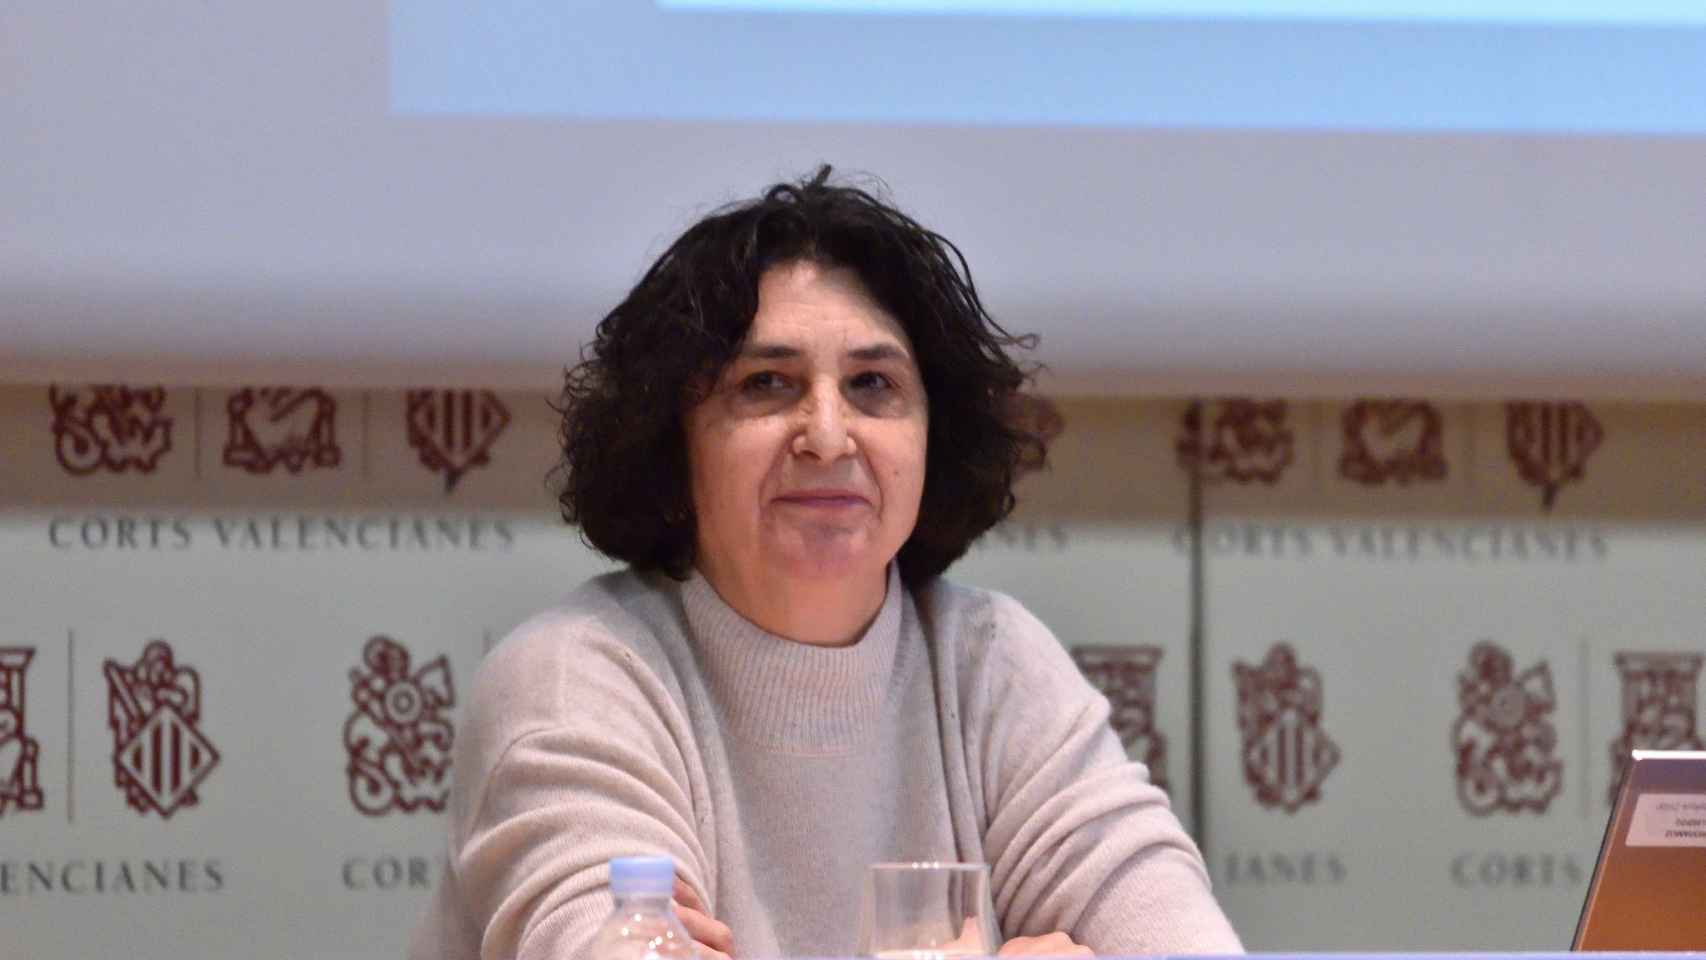 La profesora Joana Gallego durante una conferencia / CORTS VALENCIANES